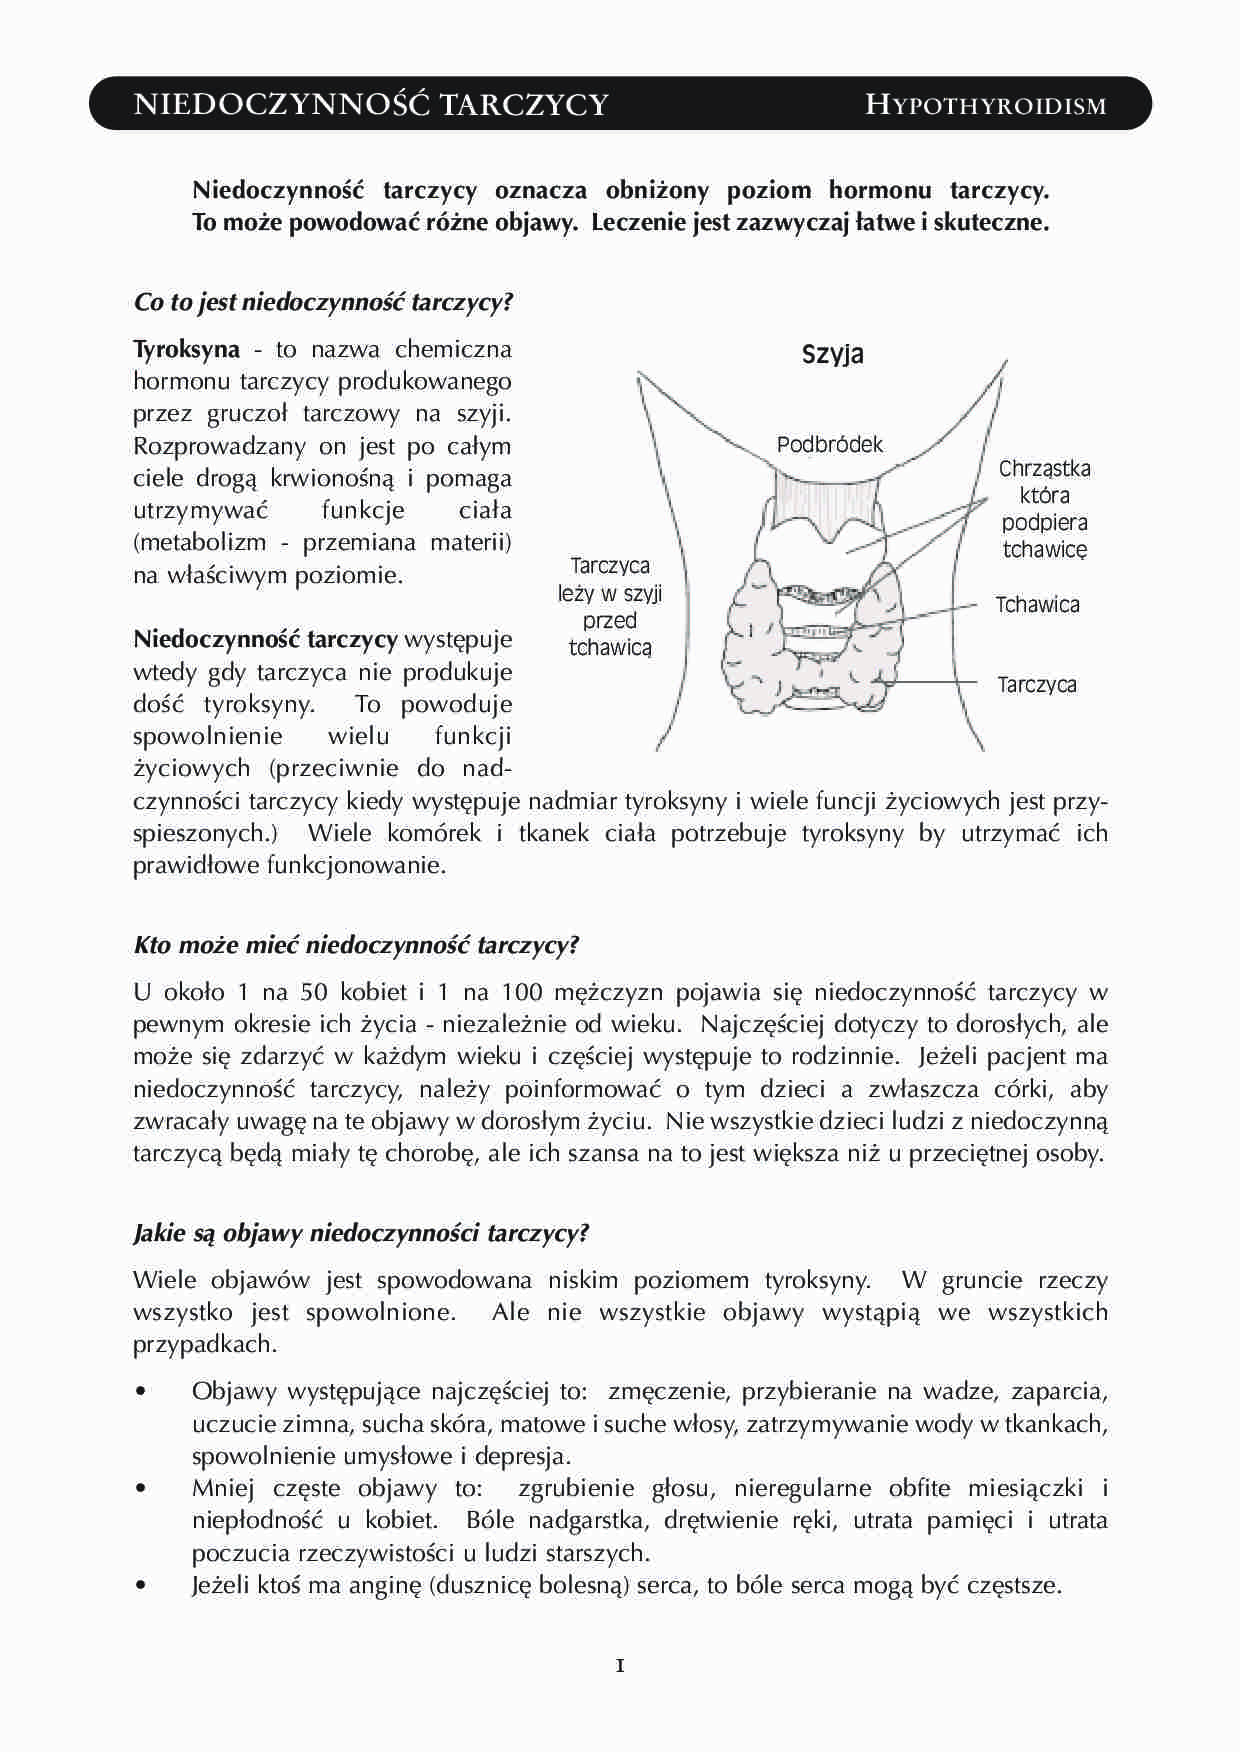 Hypothyroidism - niedoczynność tarczycy - strona 1